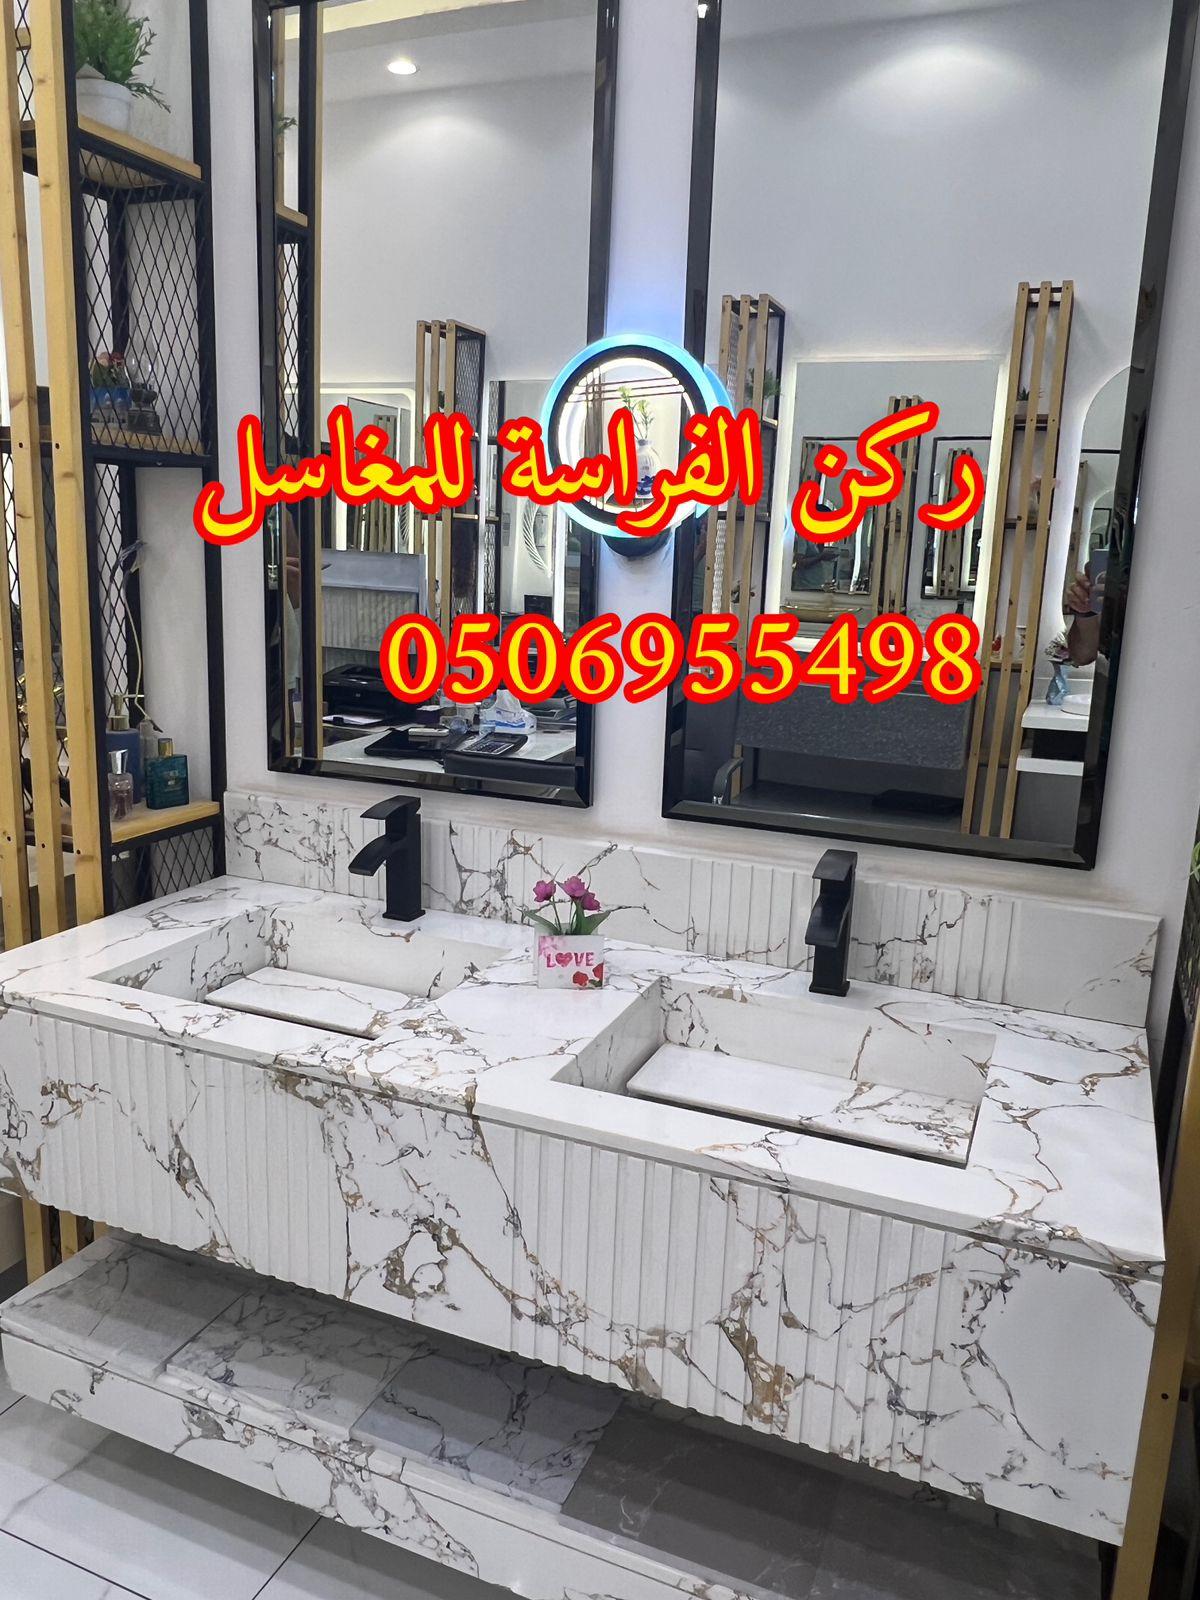 الرياض - مغاسل حمامات رخام مودرن فخمة في الرياض,0506955498 424805838